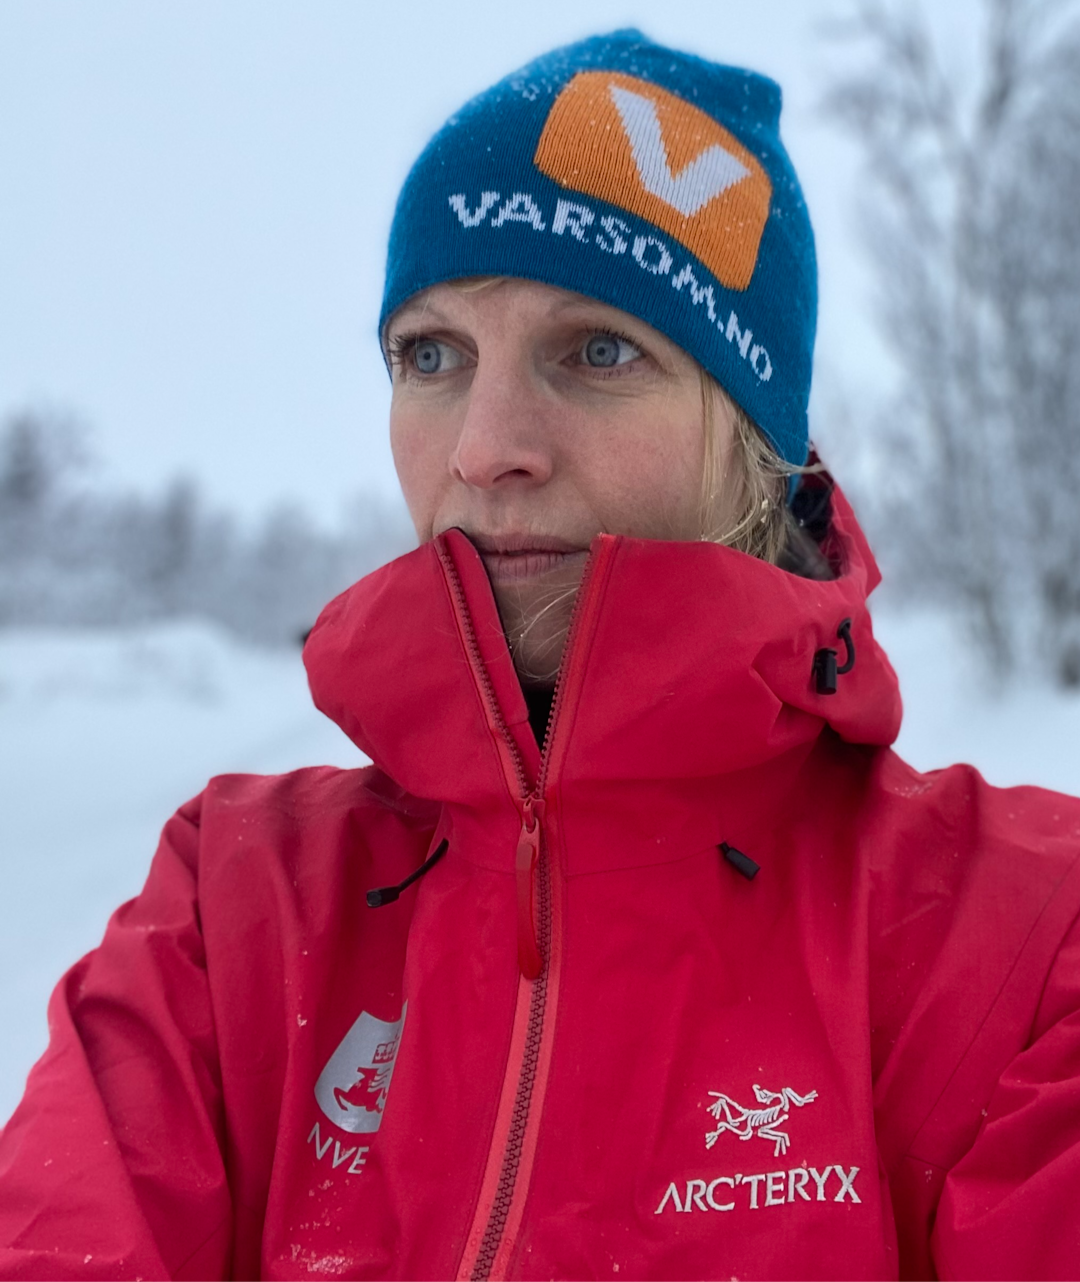 SKREDVARSLER: Heidi Bache Stranden i Varsom – Snøskredvarslingen.